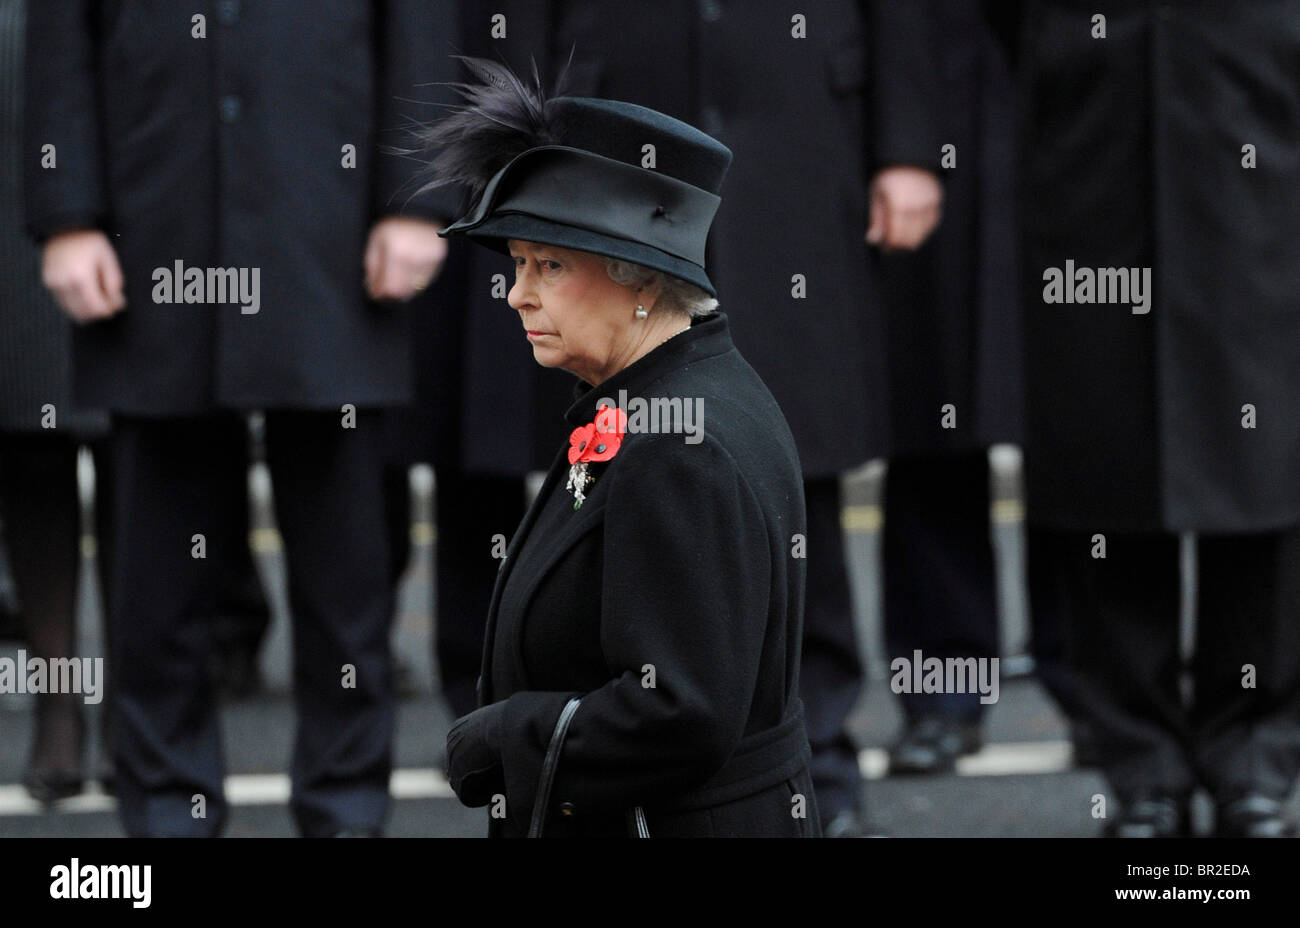 Son Altesse Royale la Reine Elizabeth II assiste à la cérémonie du dimanche service au Cénotaphe, Whitehall, Londres, 8 novembre 2009. Banque D'Images